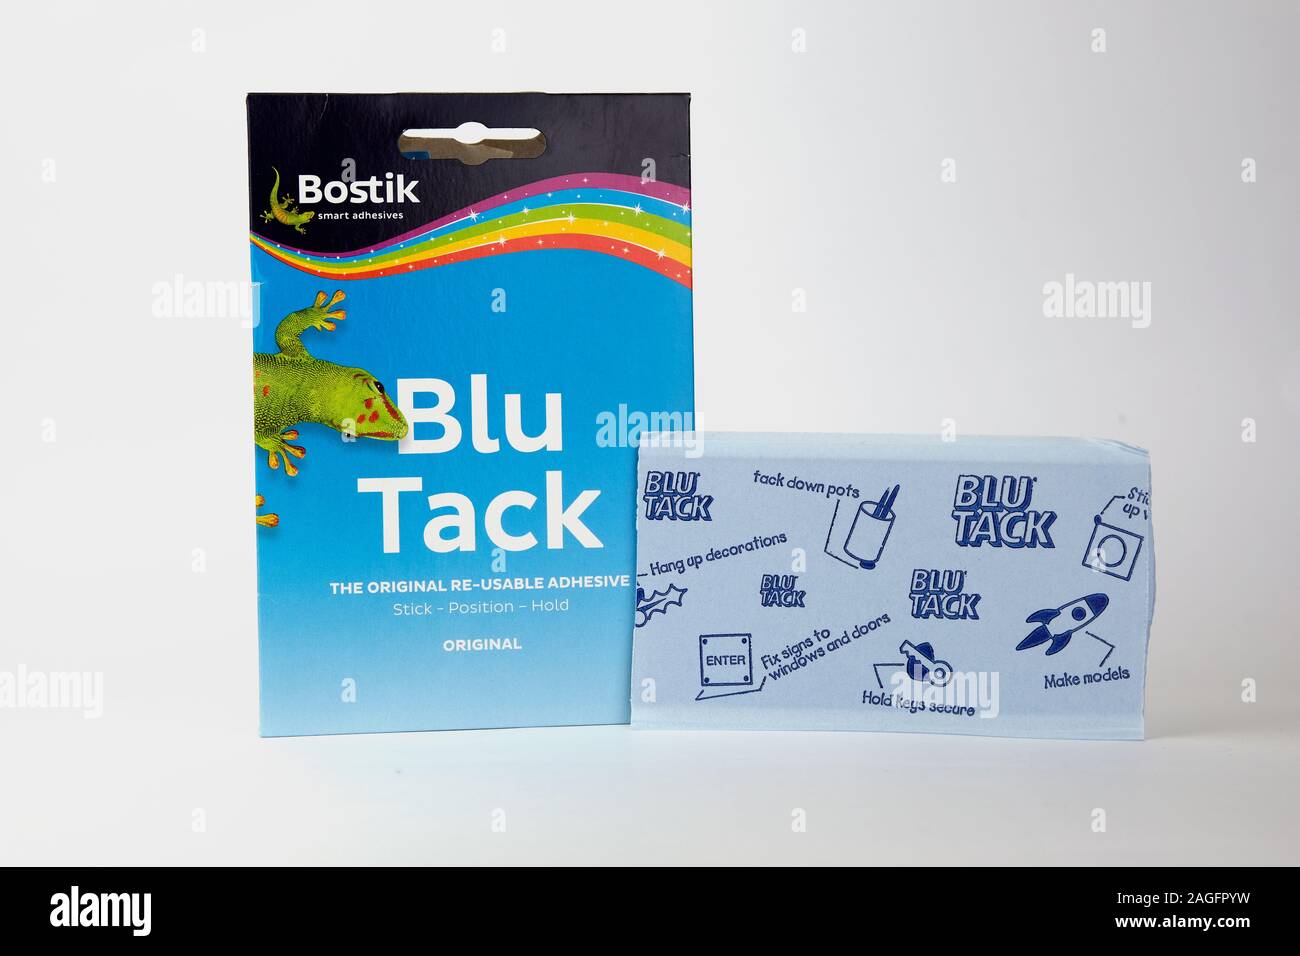 Blu Tack in der Verkaufsverpackung. Beliebte Klebstoff fügen Sie häufig verwendete leichten Gegenständen an der Wand zu befestigen. Stockfoto